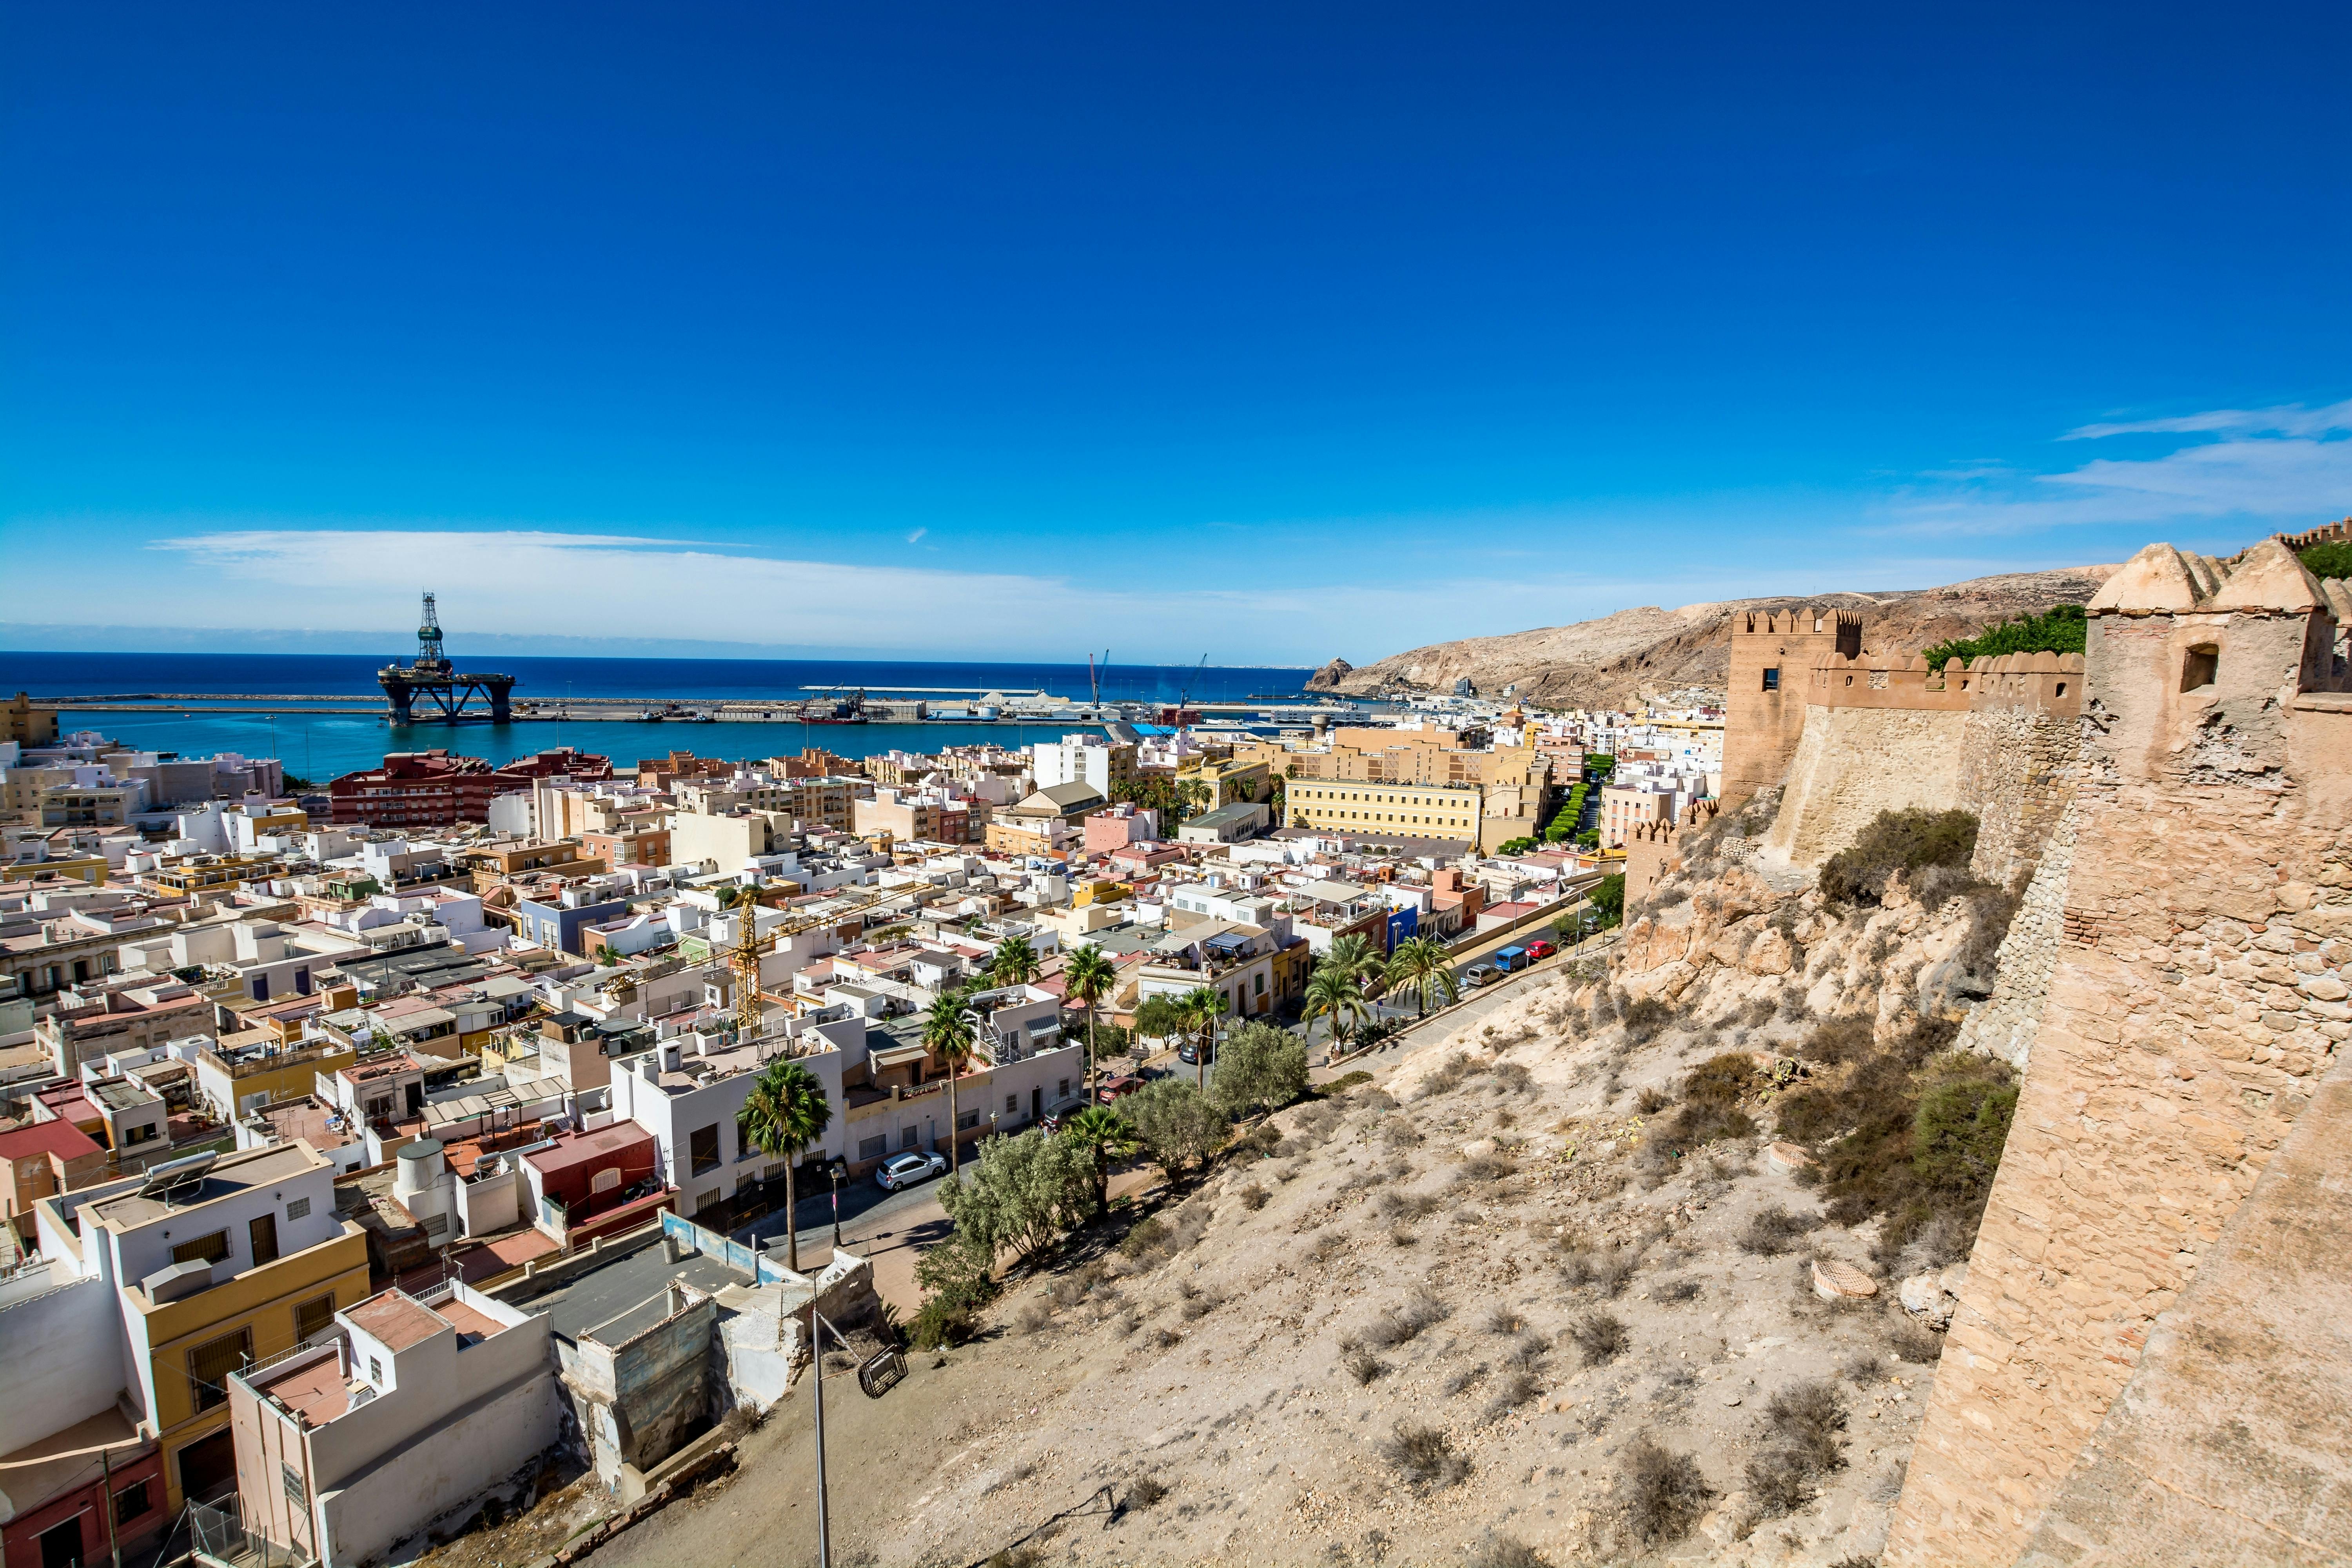 Recorrido a pie del centro histórico de Almería Musement